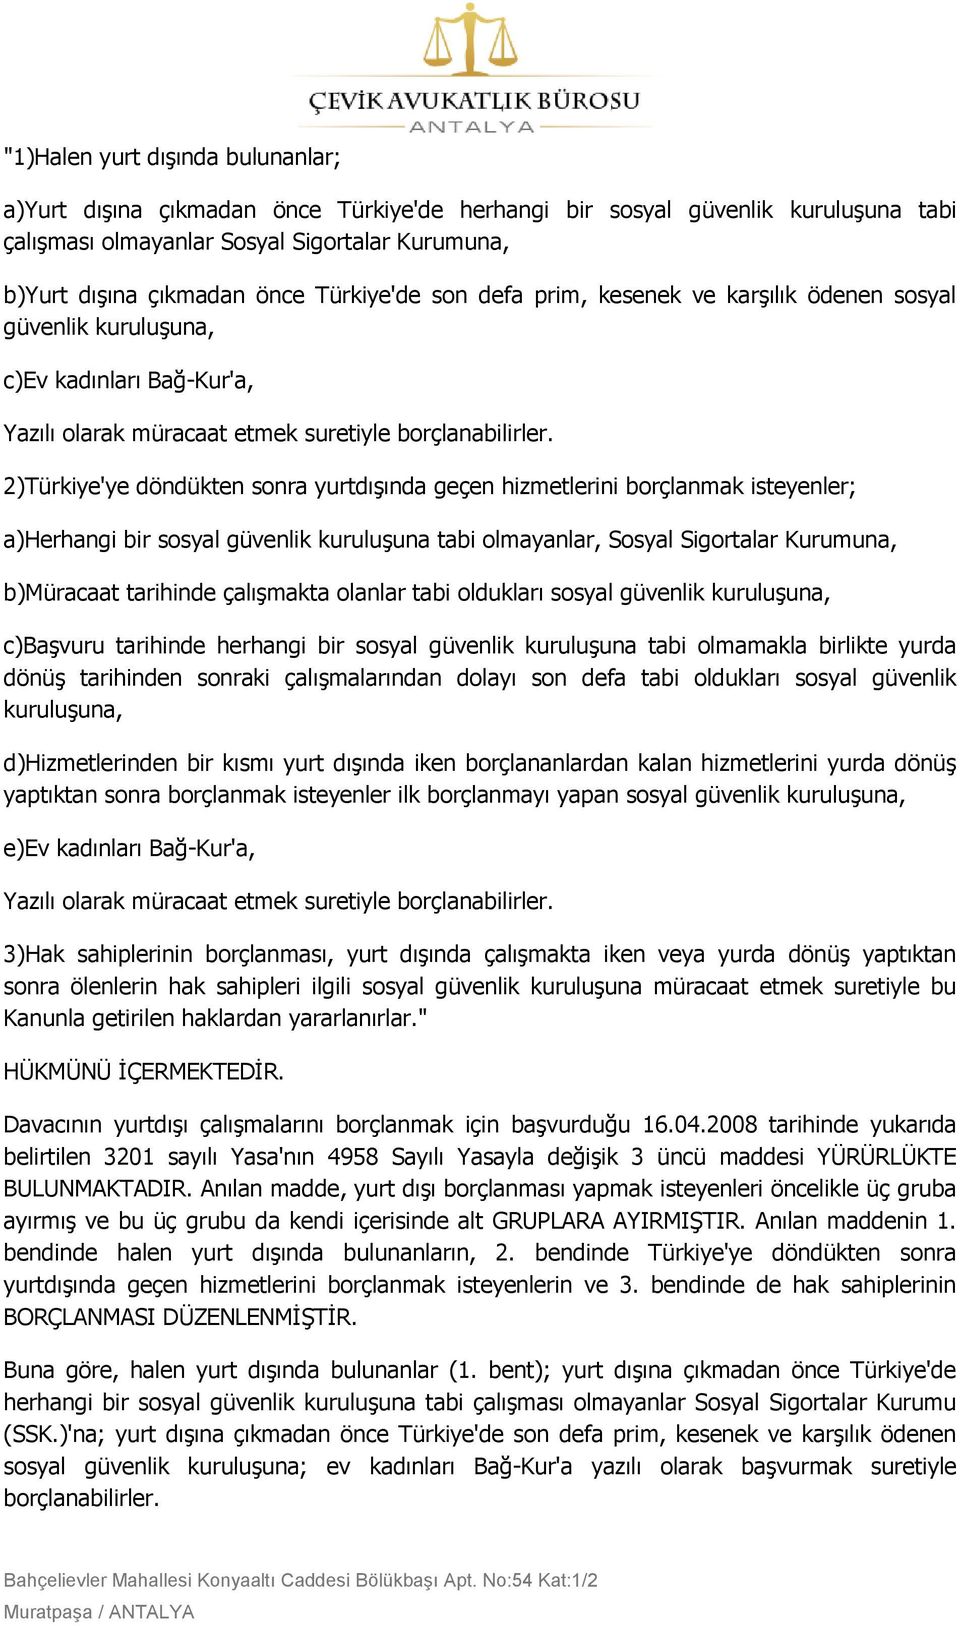 2)Türkiye'ye döndükten sonra yurtdıģında geçen hizmetlerini borçlanmak isteyenler; a)herhangi bir sosyal güvenlik kuruluģuna tabi olmayanlar, Sosyal Sigortalar Kurumuna, b)müracaat tarihinde